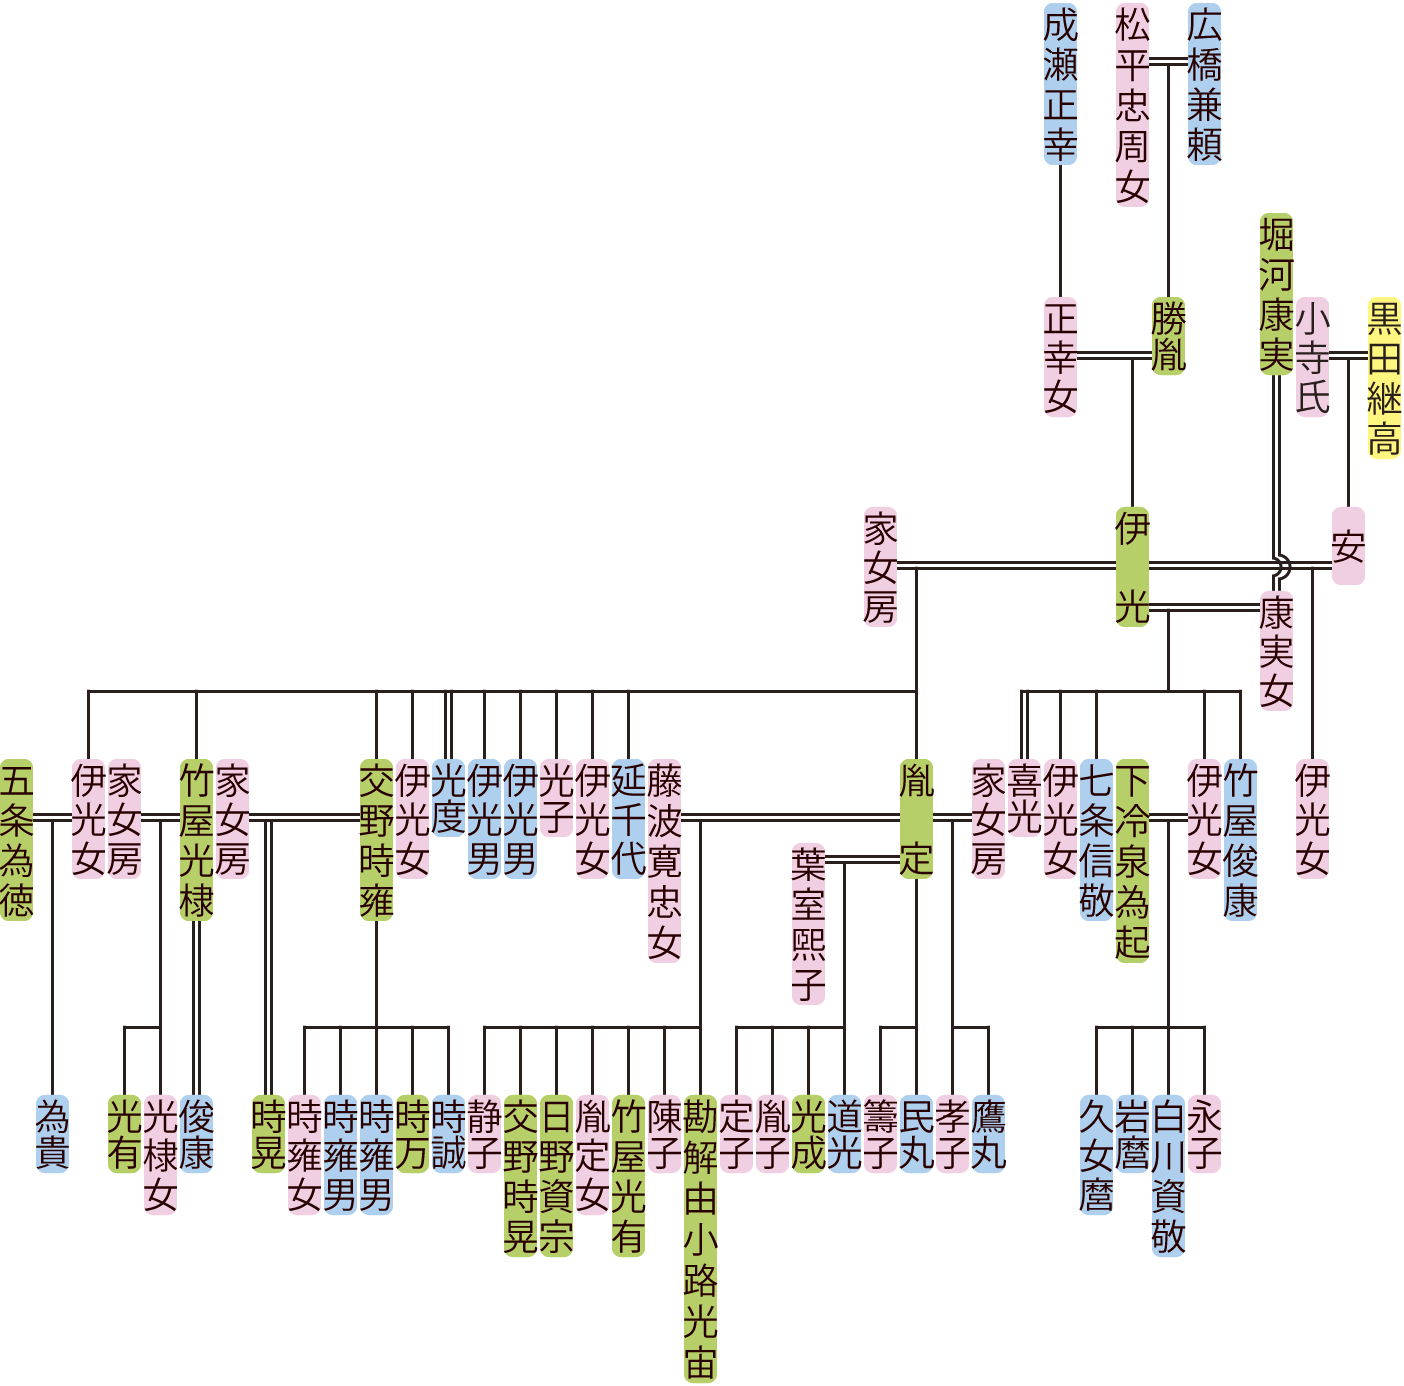 広橋伊光の系図